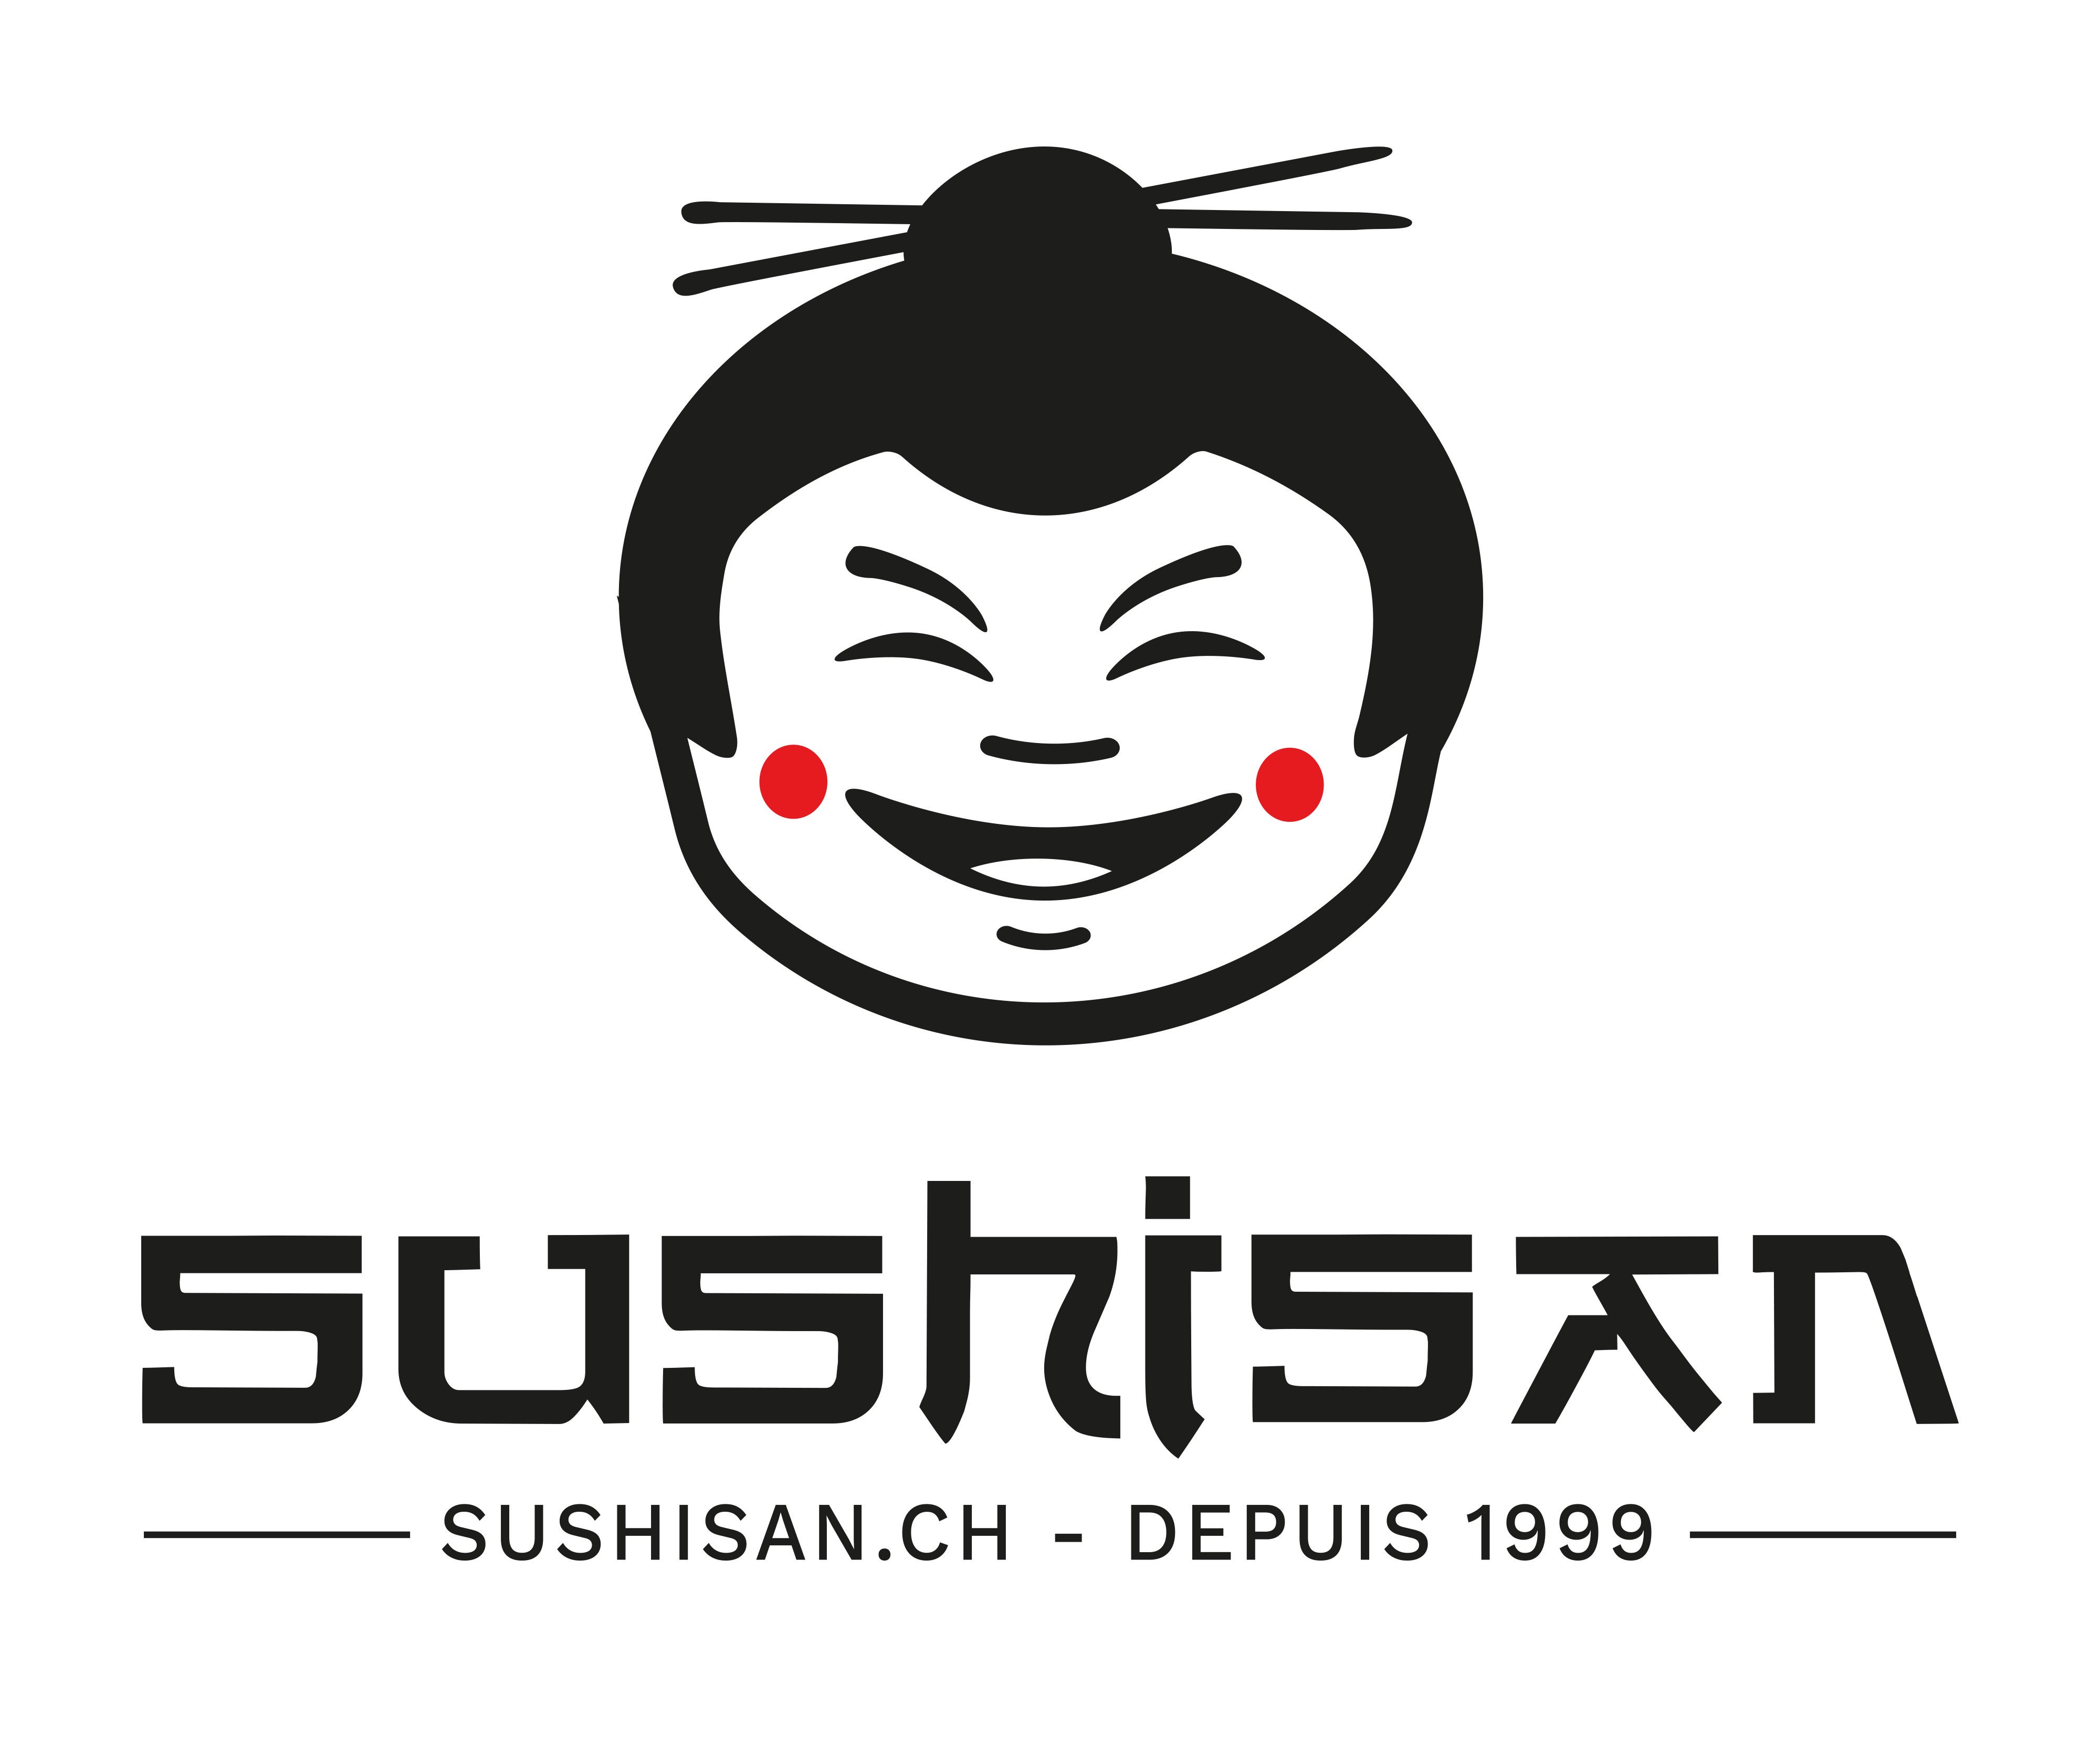 Sushisan